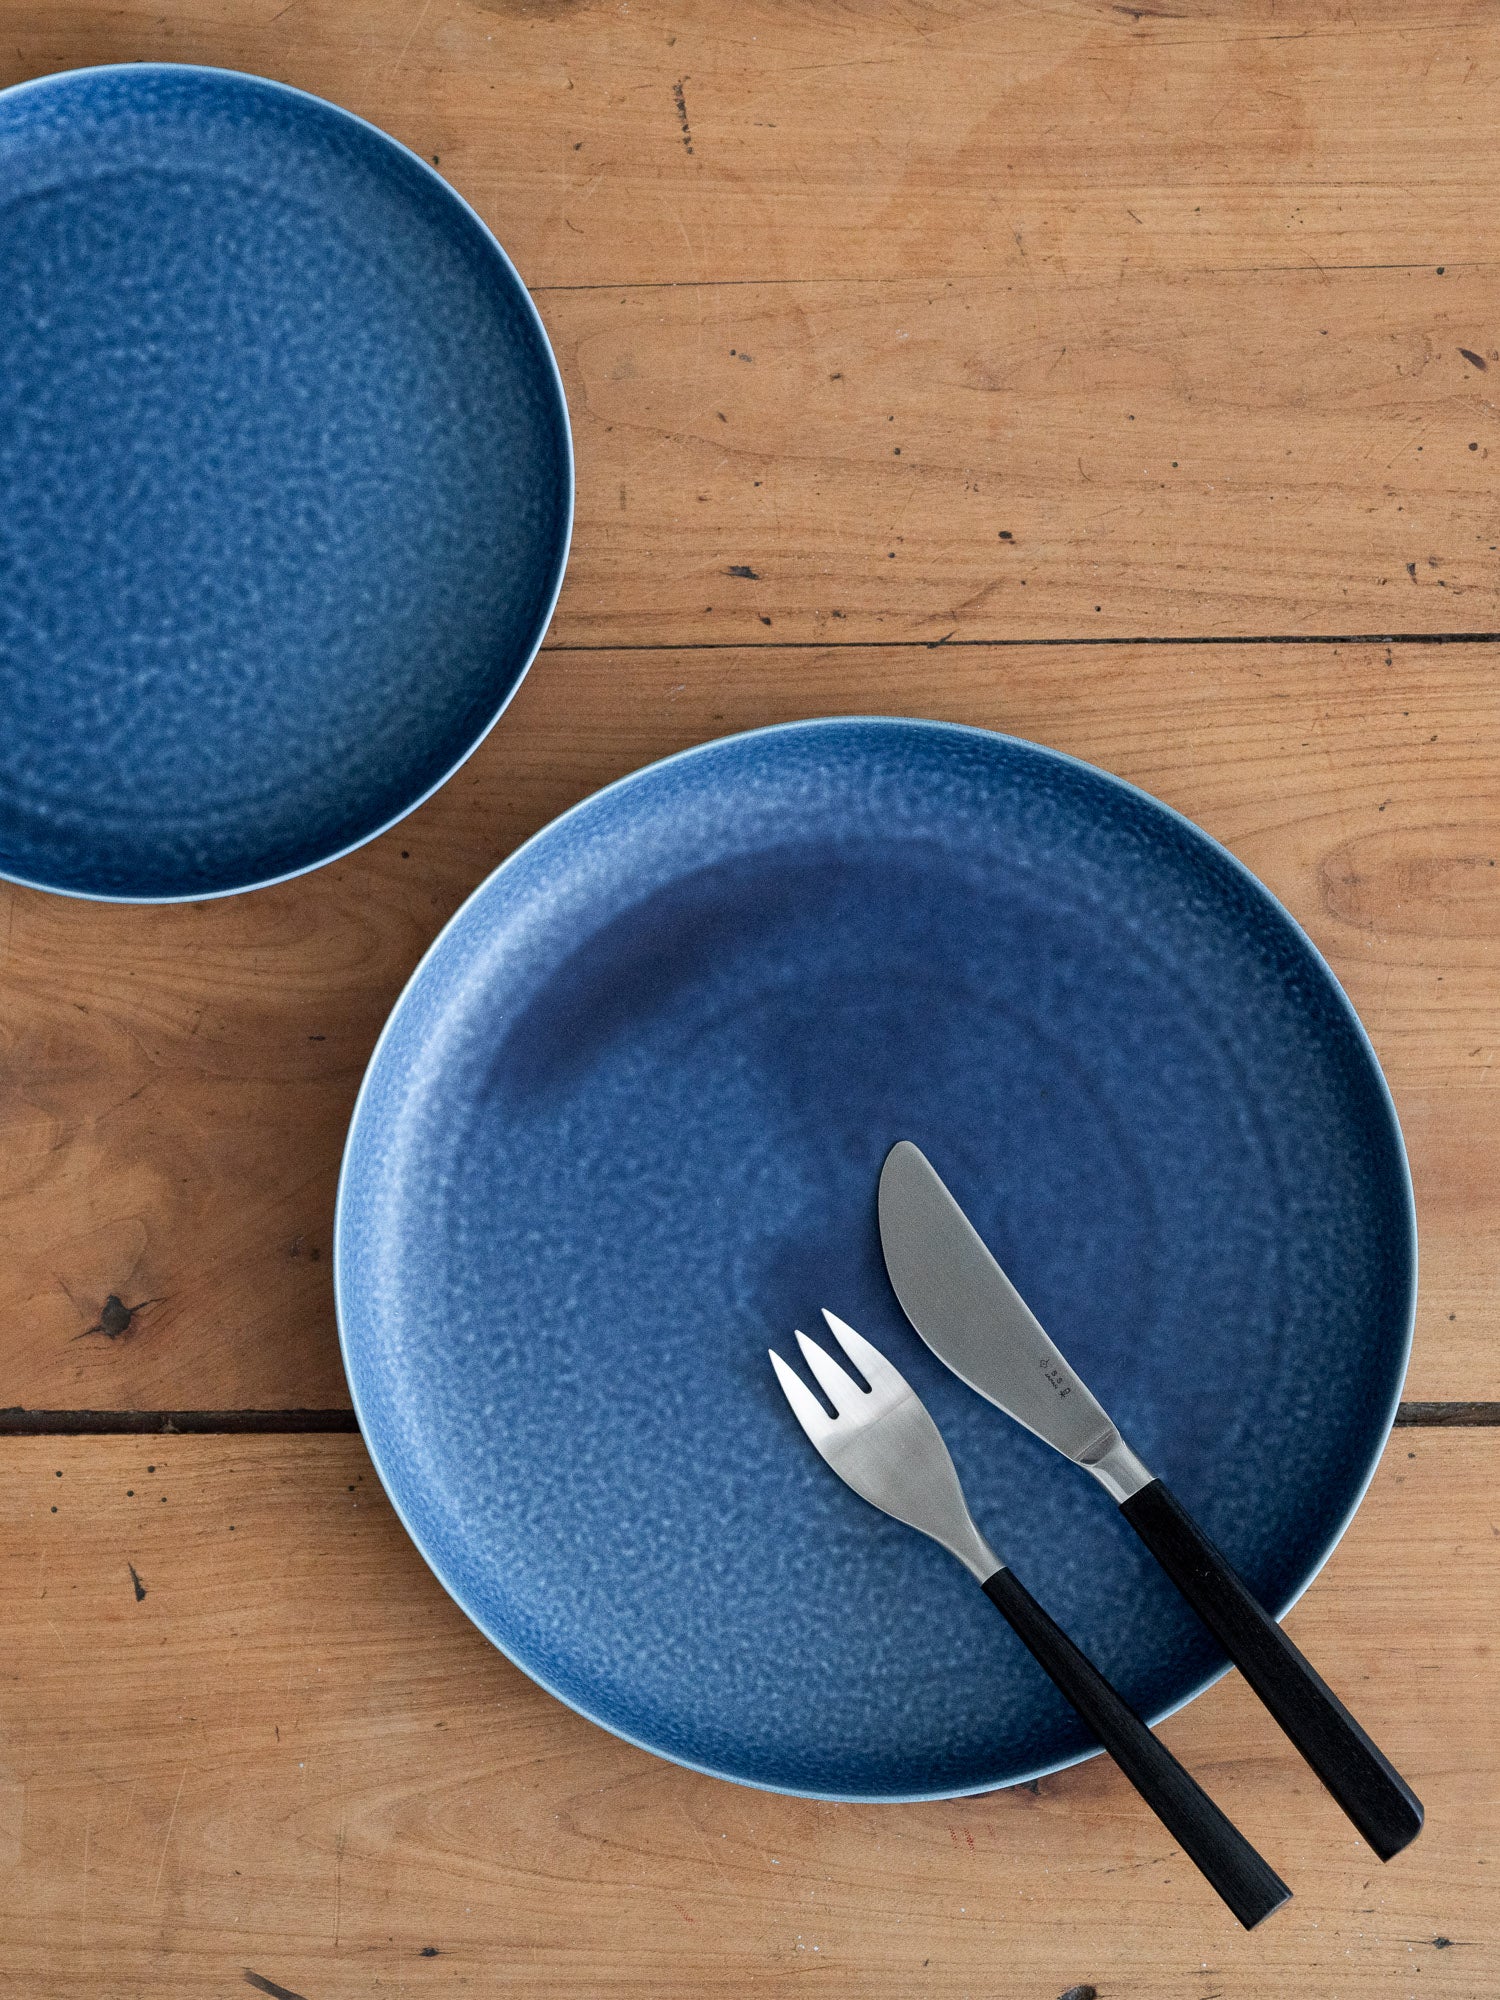 ReIRABO Dinner Plate – Offshore Blue